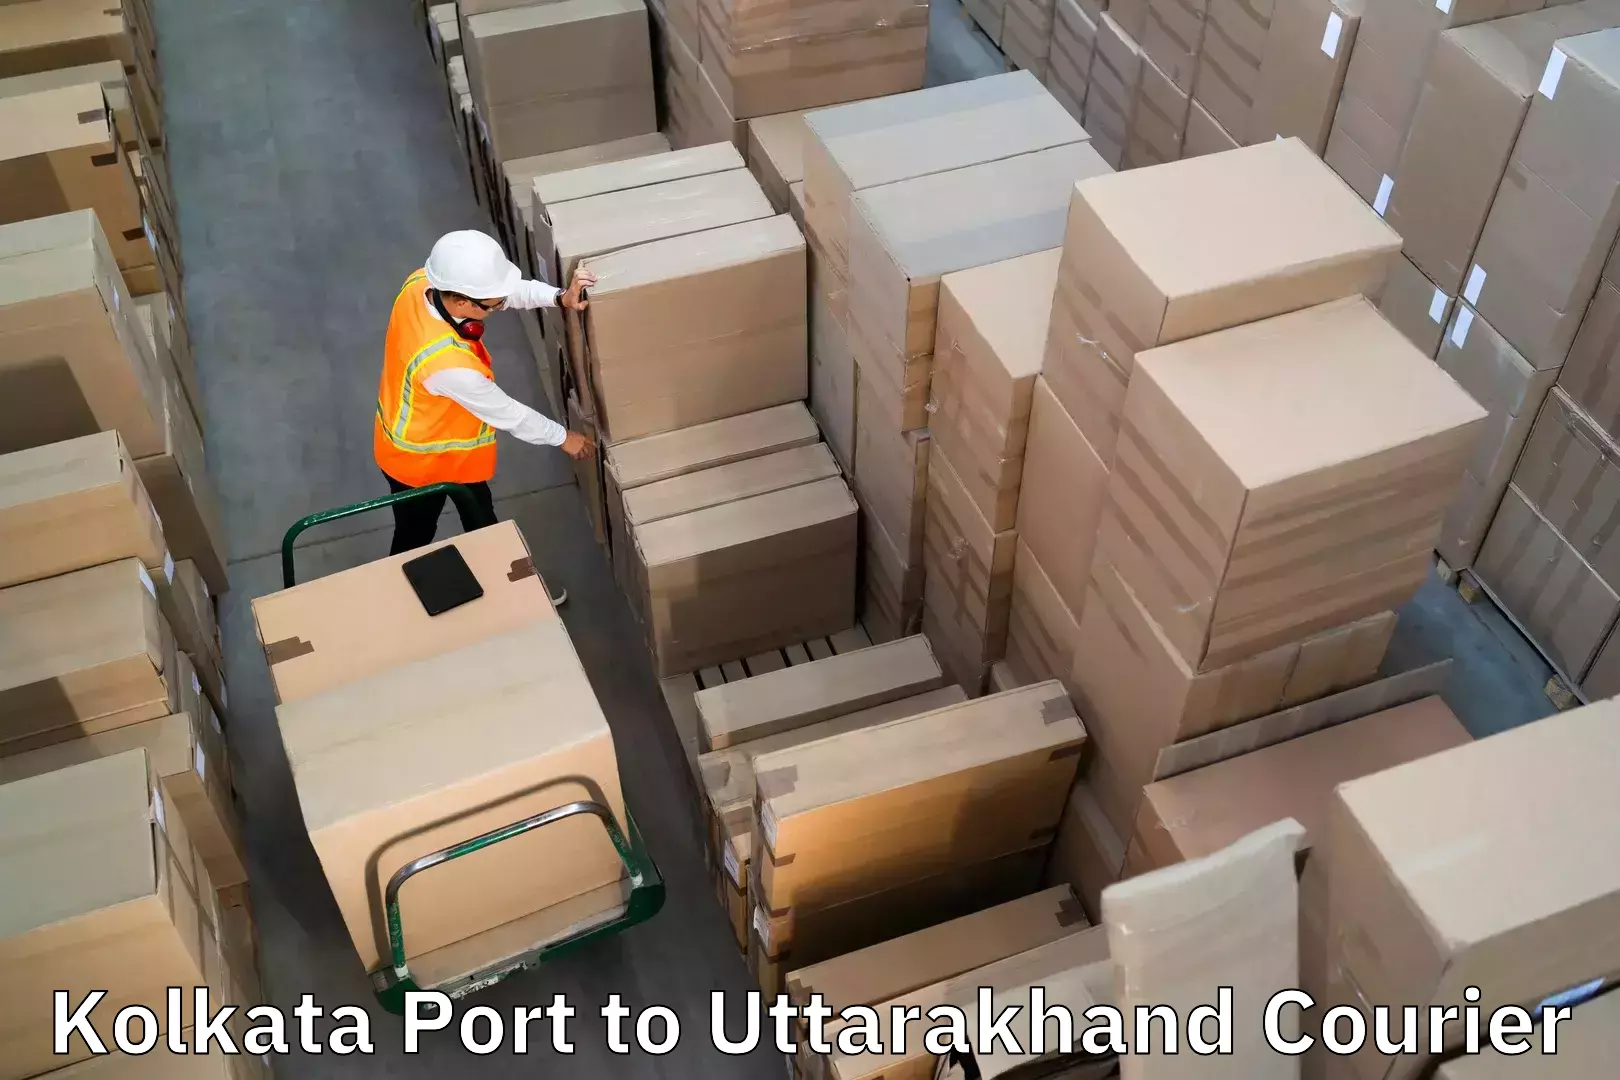 Professional baggage transport Kolkata Port to Dwarahat